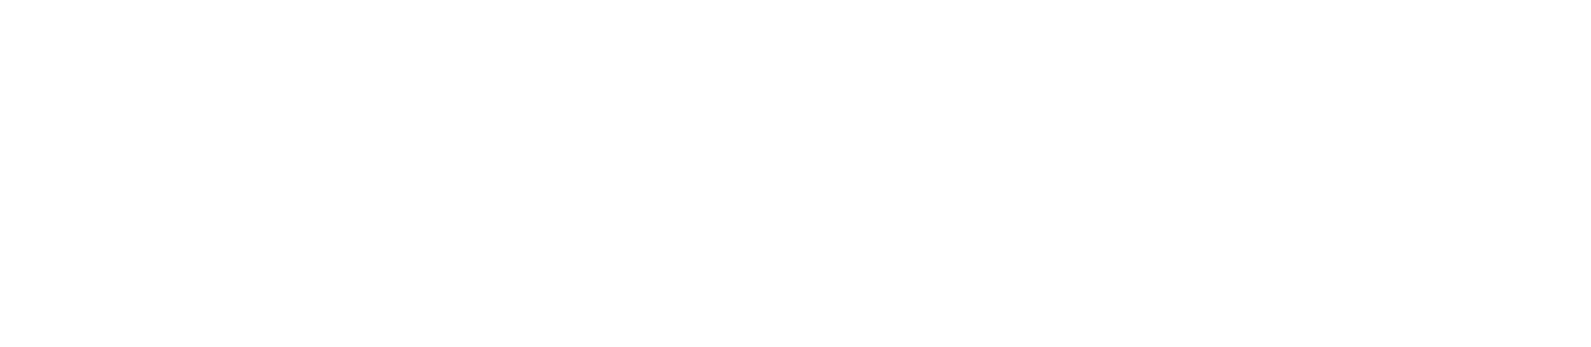 Veracyte logo large for dark backgrounds (transparent PNG)